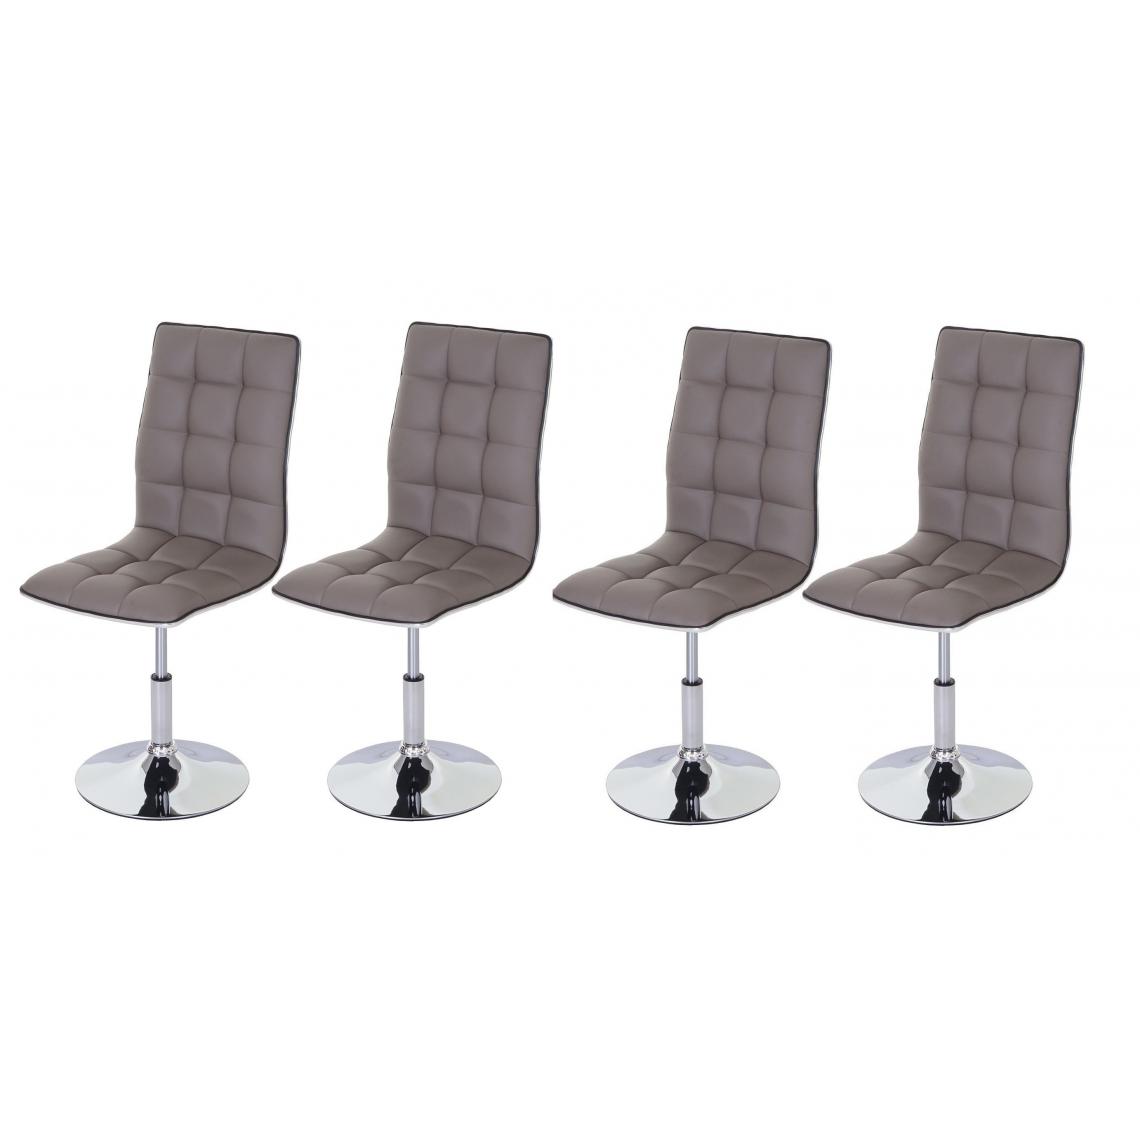 Decoshop26 - Lot de 4 chaises de salle à manger hauteur réglable en similicuir taupe CDS04194 - Chaises